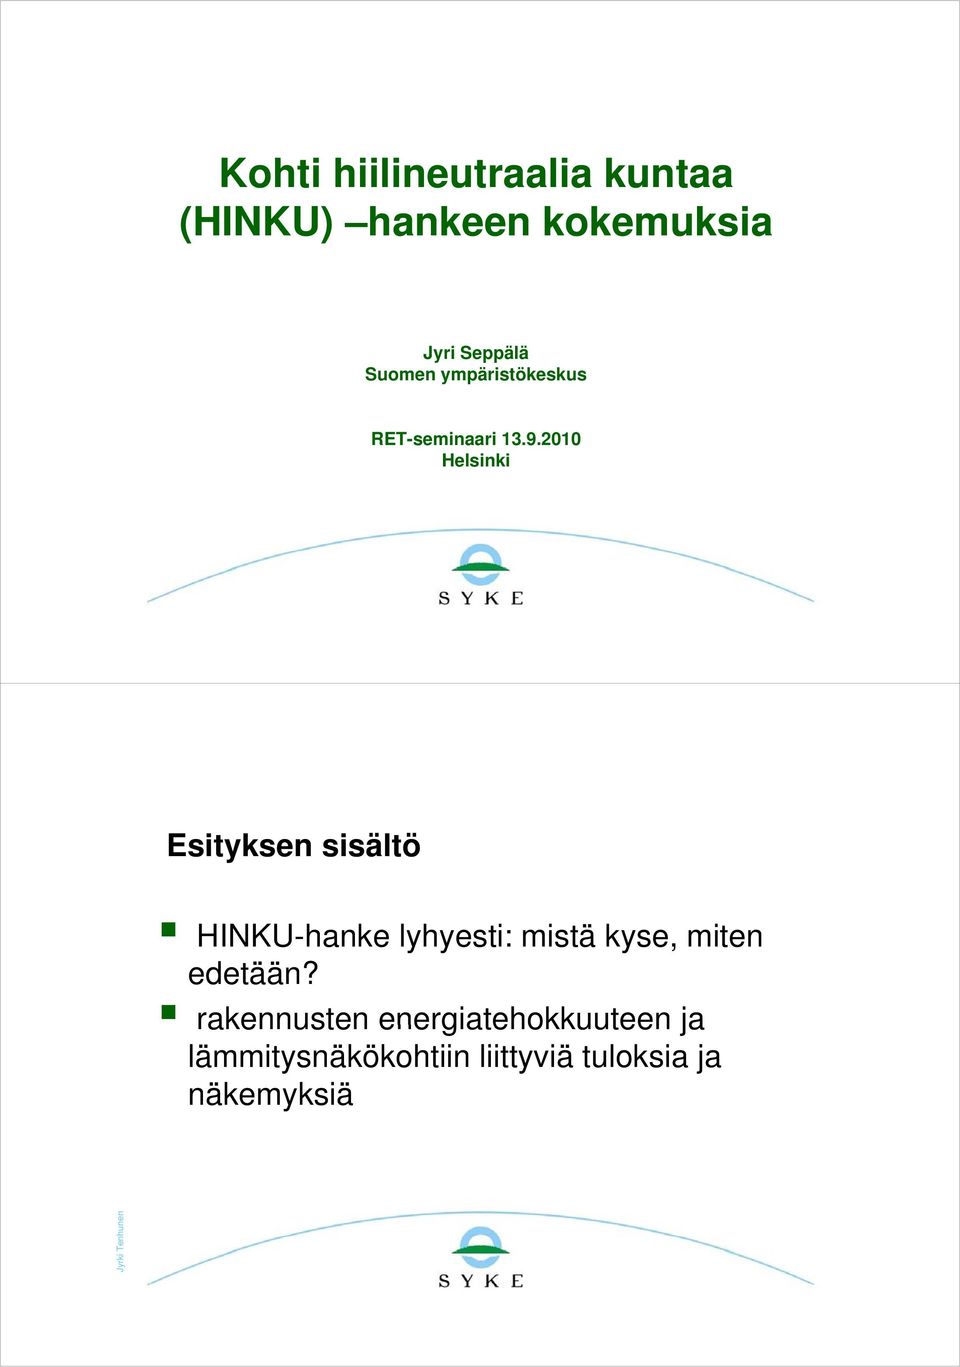 2010 Helsinki Esityksen sisältö HINKU-hanke lyhyesti: y mistä kyse, miten